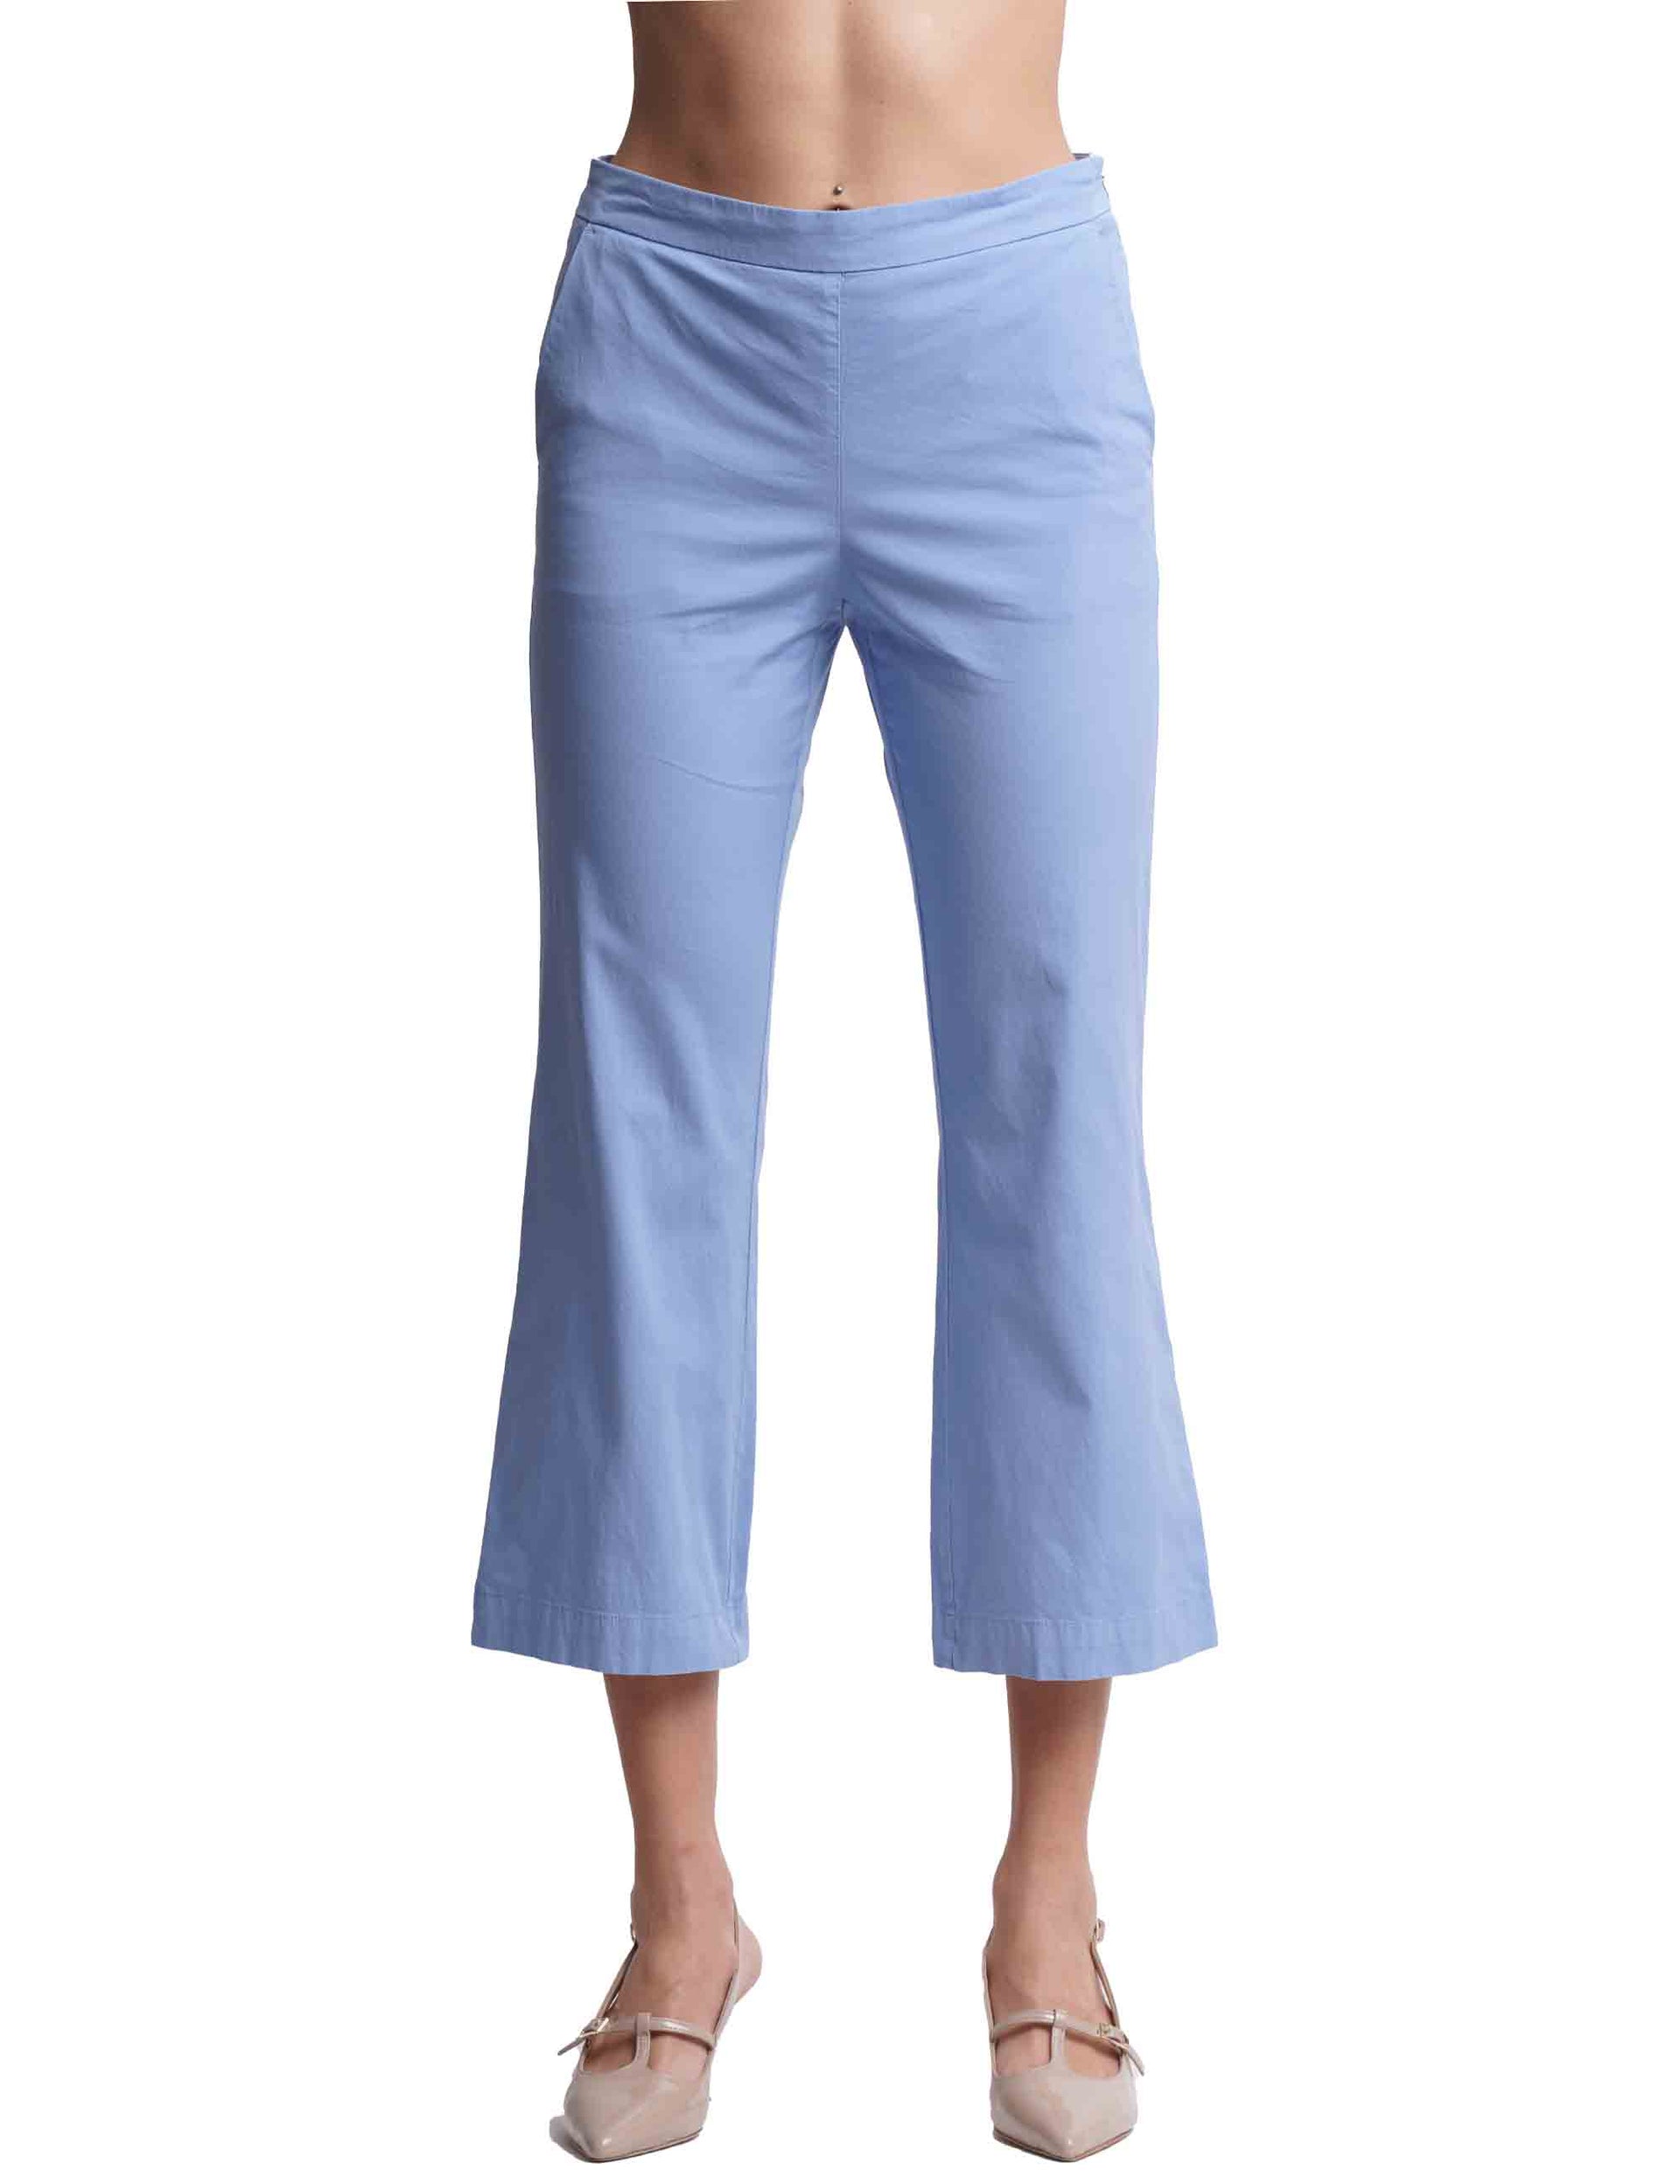 Women's poplin stretch trousers in light blue cotton